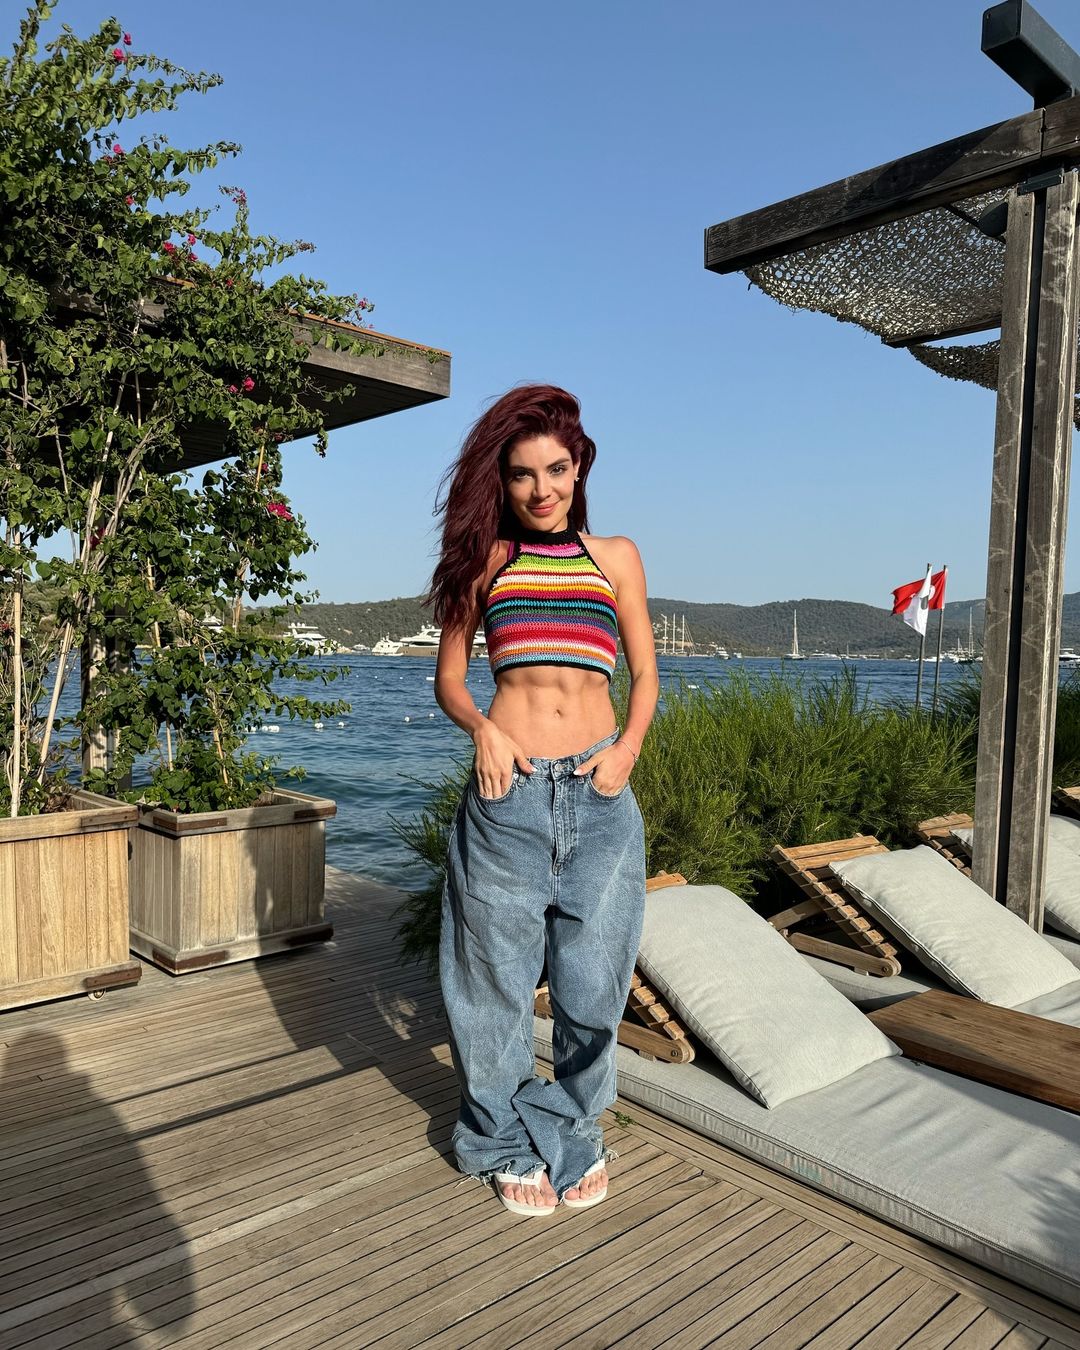 GKay ostenta abdômen trincado em cliques da viagem pela Turquia Instagram